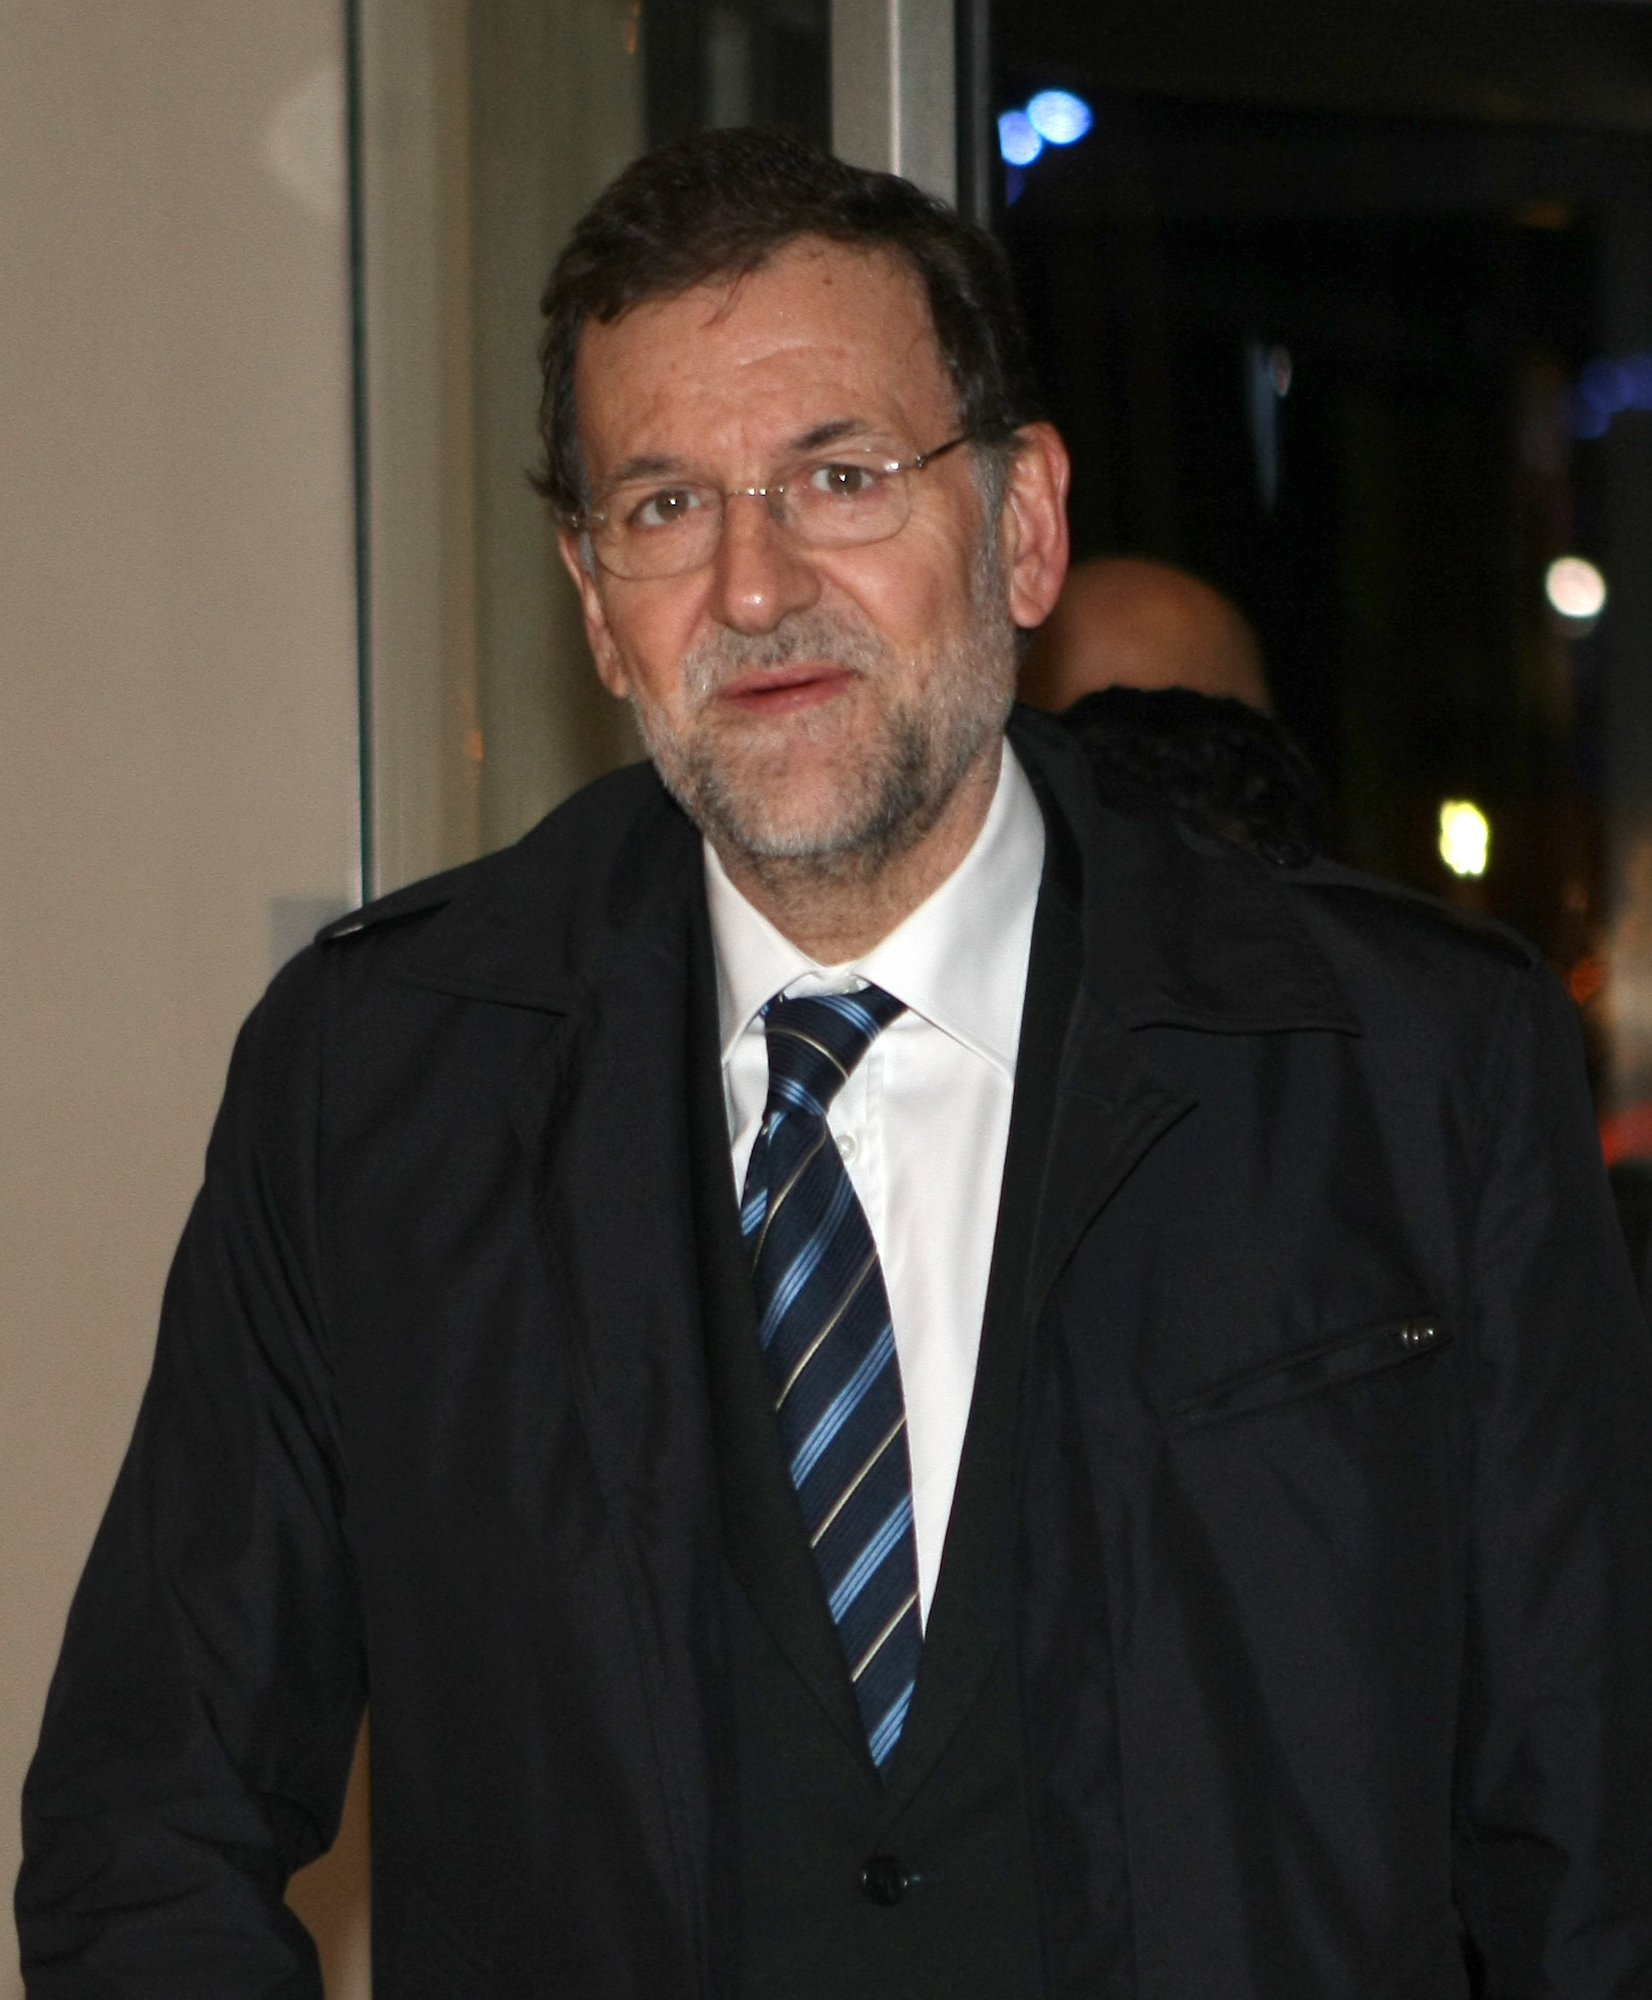 Mariano Rajoy, partiledare för konservativa Partido Populars, gav som vallöfte att återigen göra det olagligt med samkönade äktenskap.